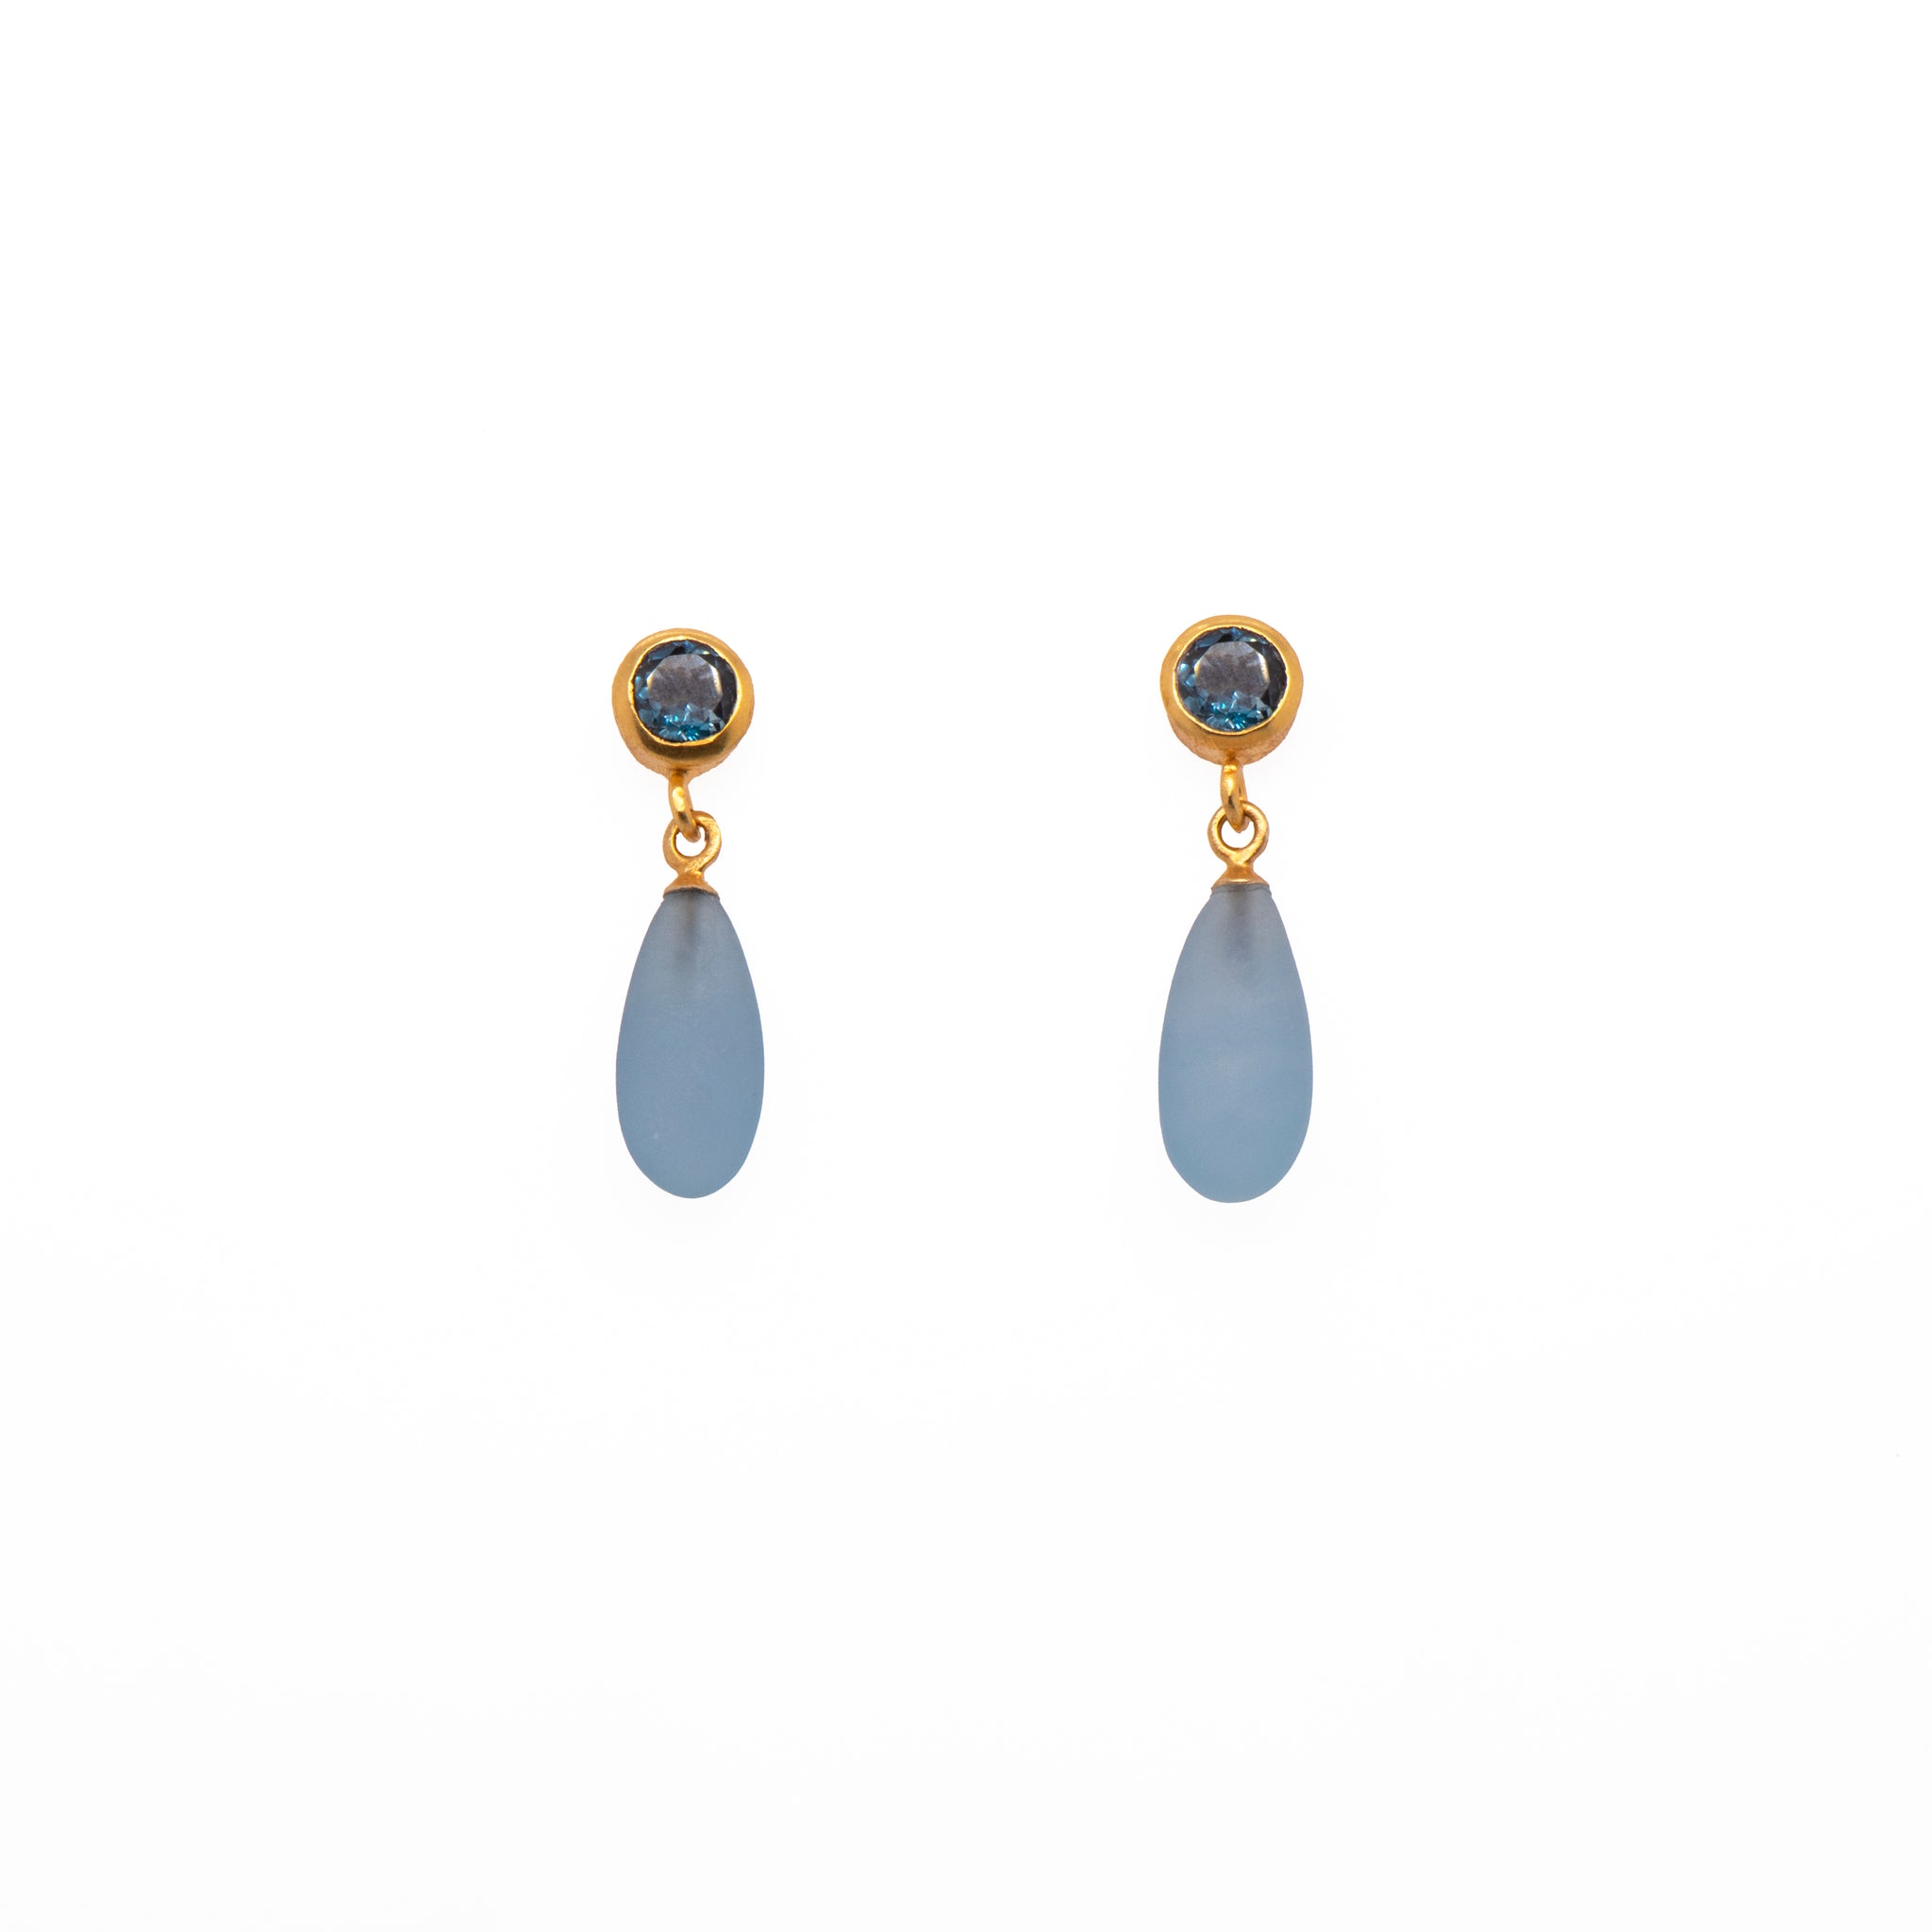 London Blue Topaz and aquamarine Earrings 5mm 24K Fair Trade Gold Vermeil